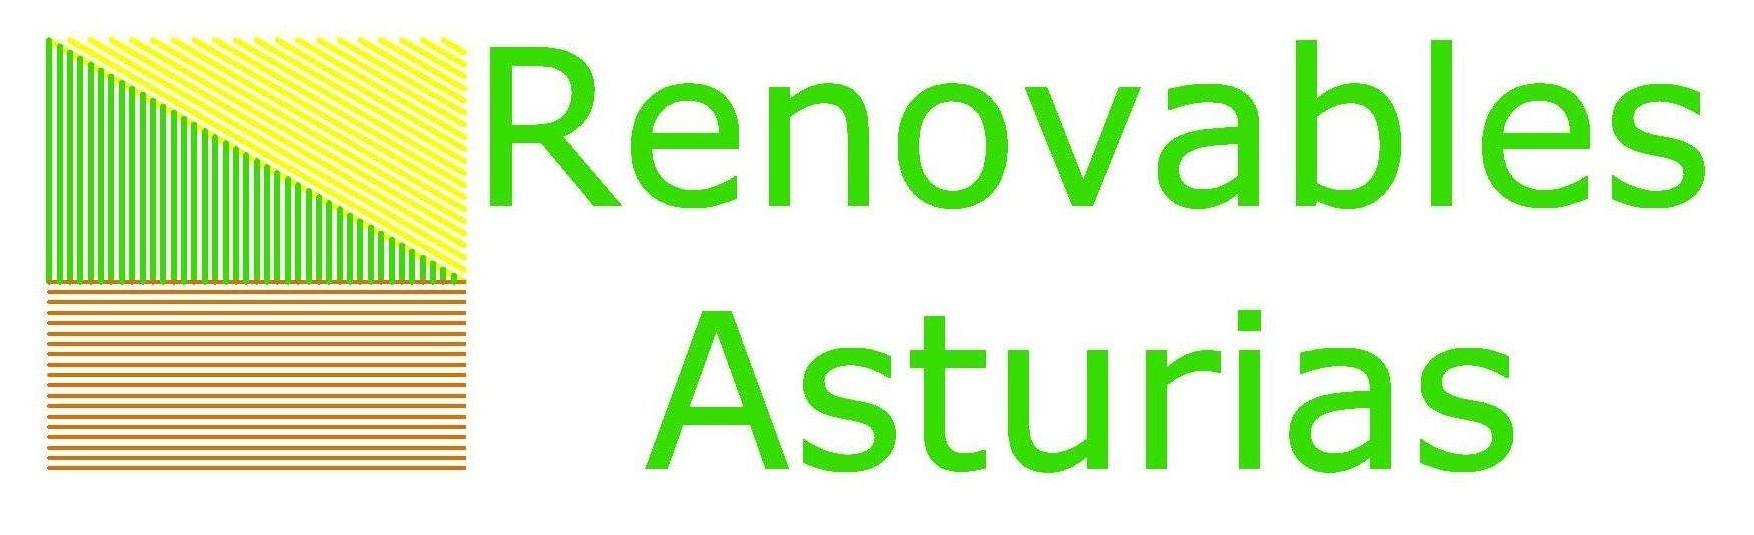 Renovables Asturias